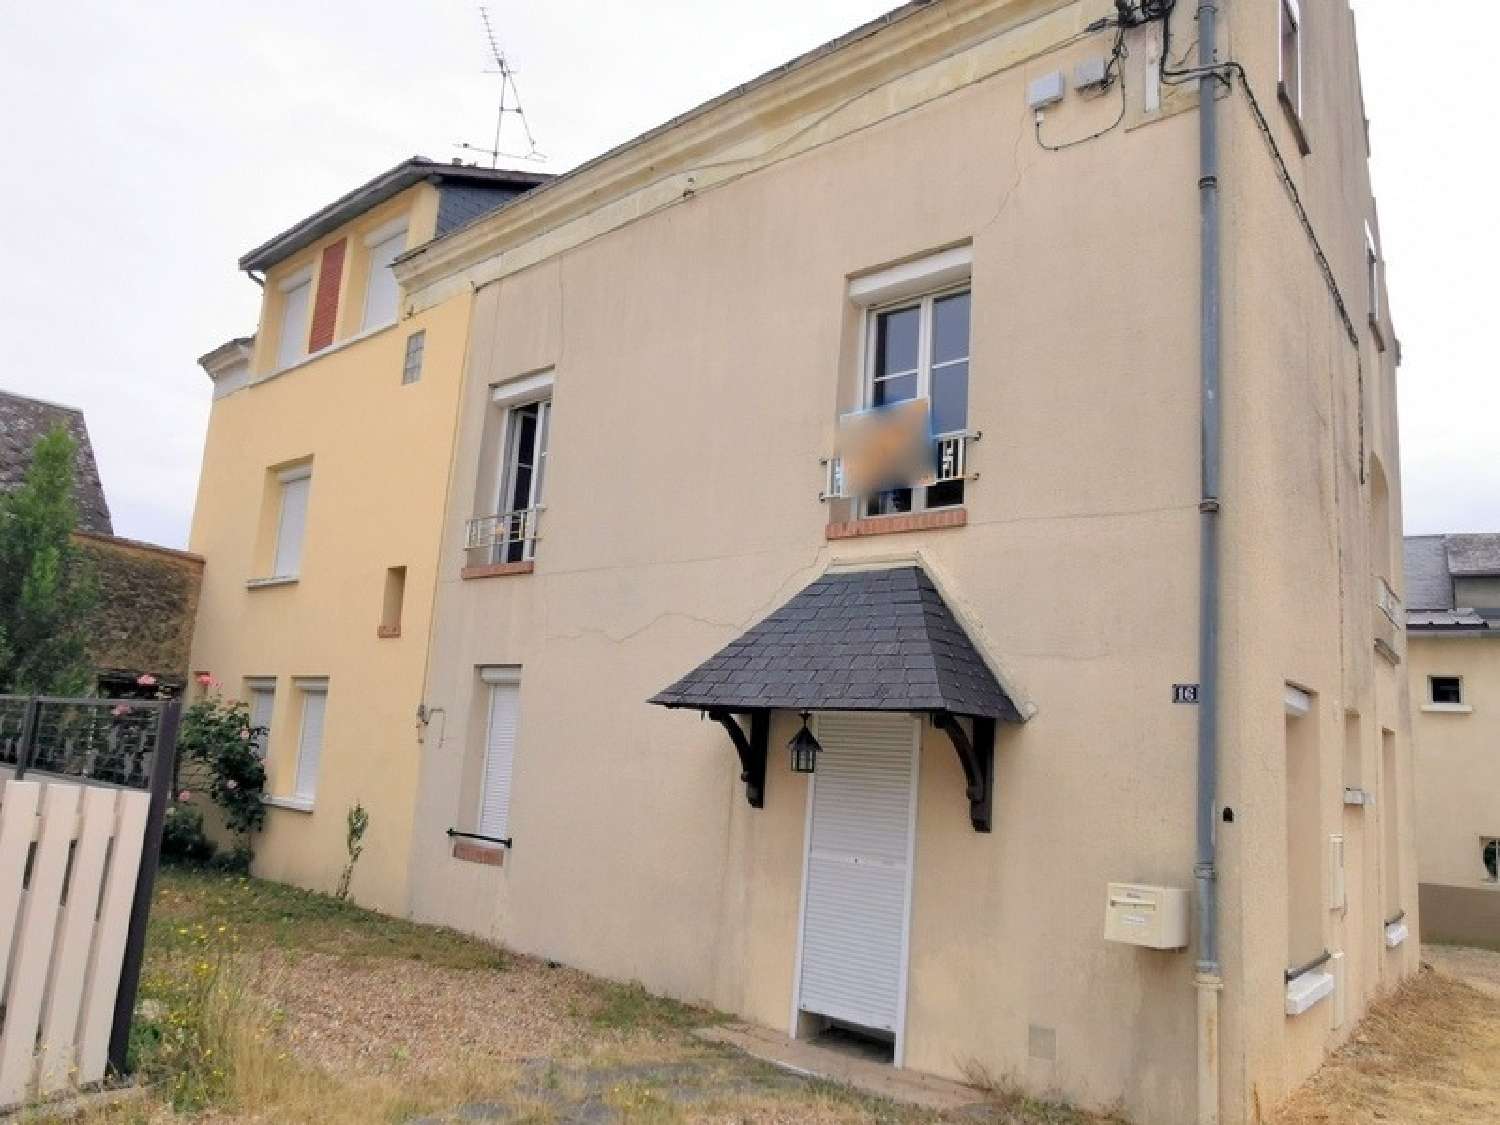  for sale house Bessé-sur-Braye Sarthe 2